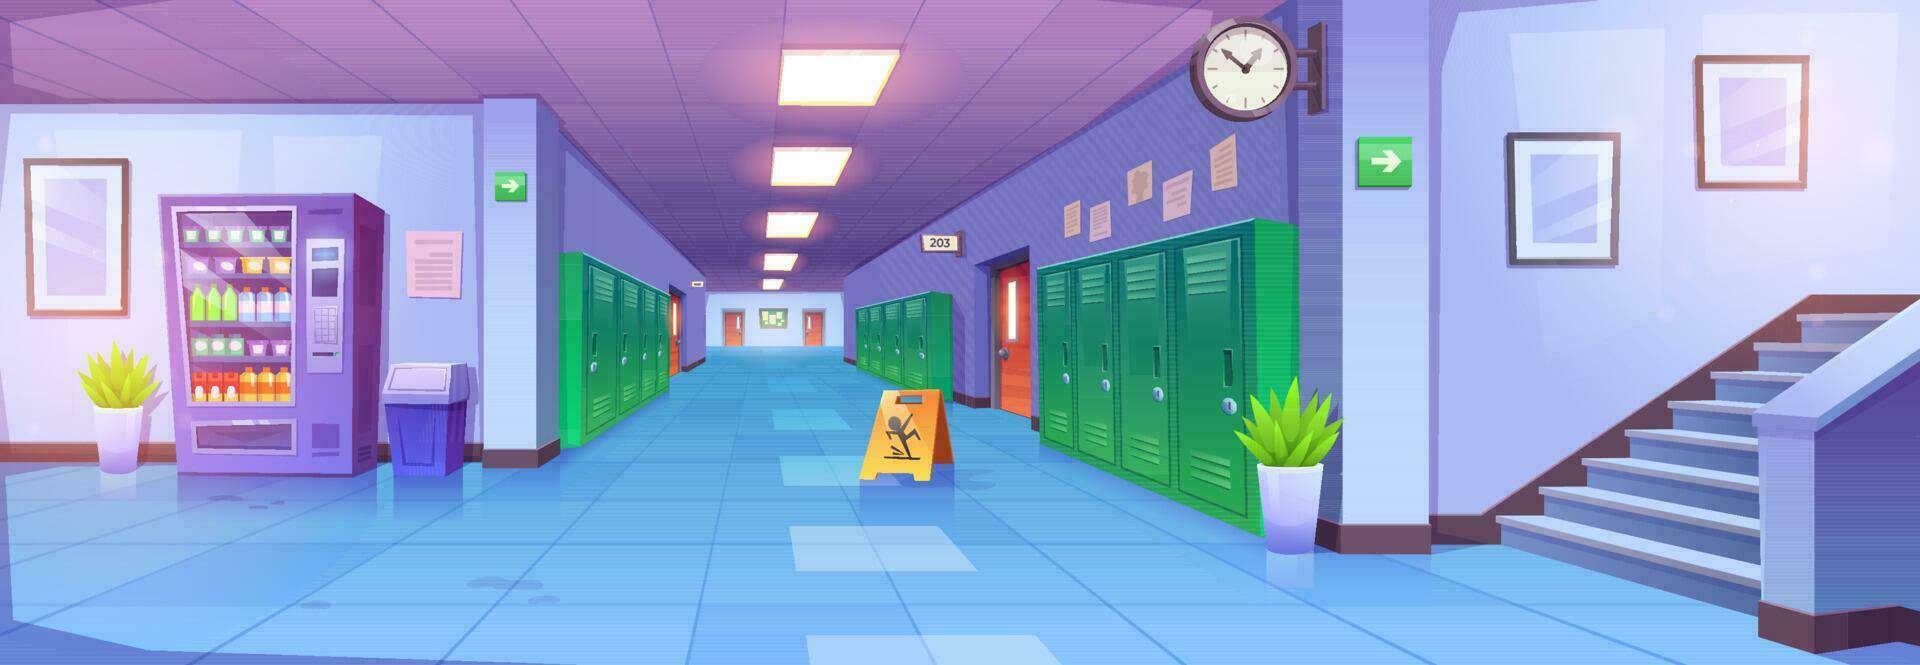 école couloir intérieur, dessin animé Université couloir vecteur